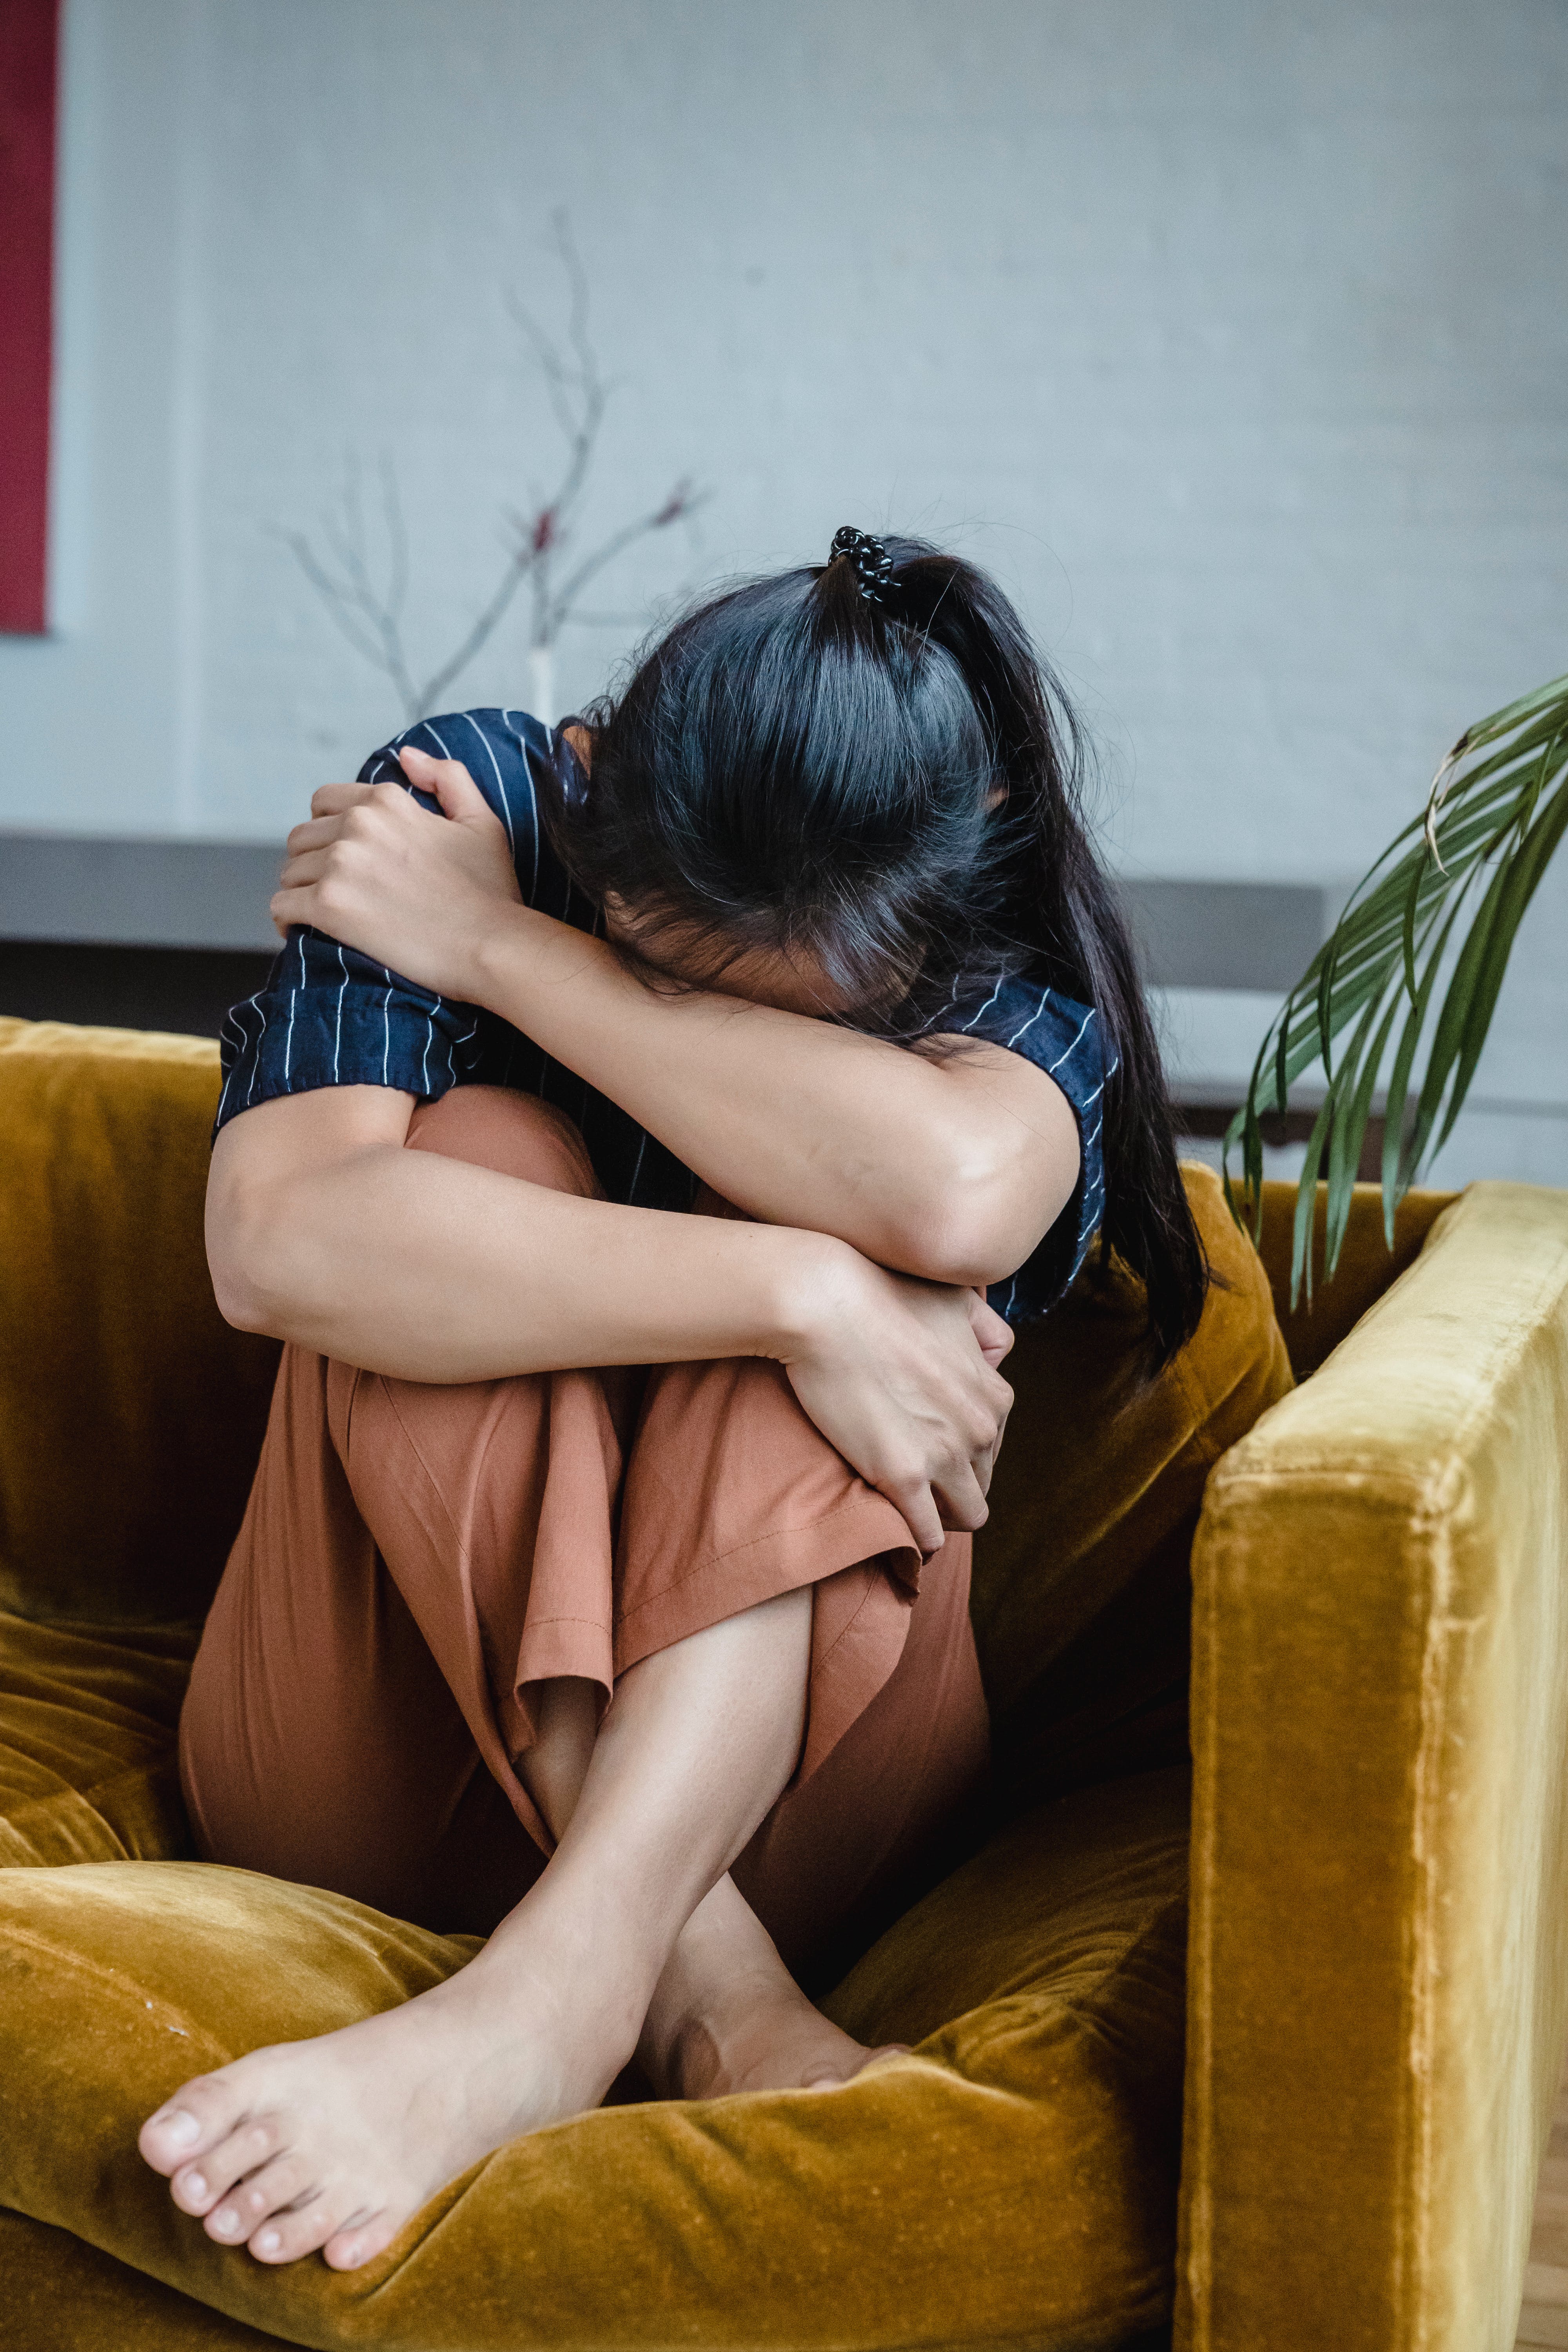 Eine Frau, die sich weinend auf der Couch zusammengerollt hat | Quelle: Pexels